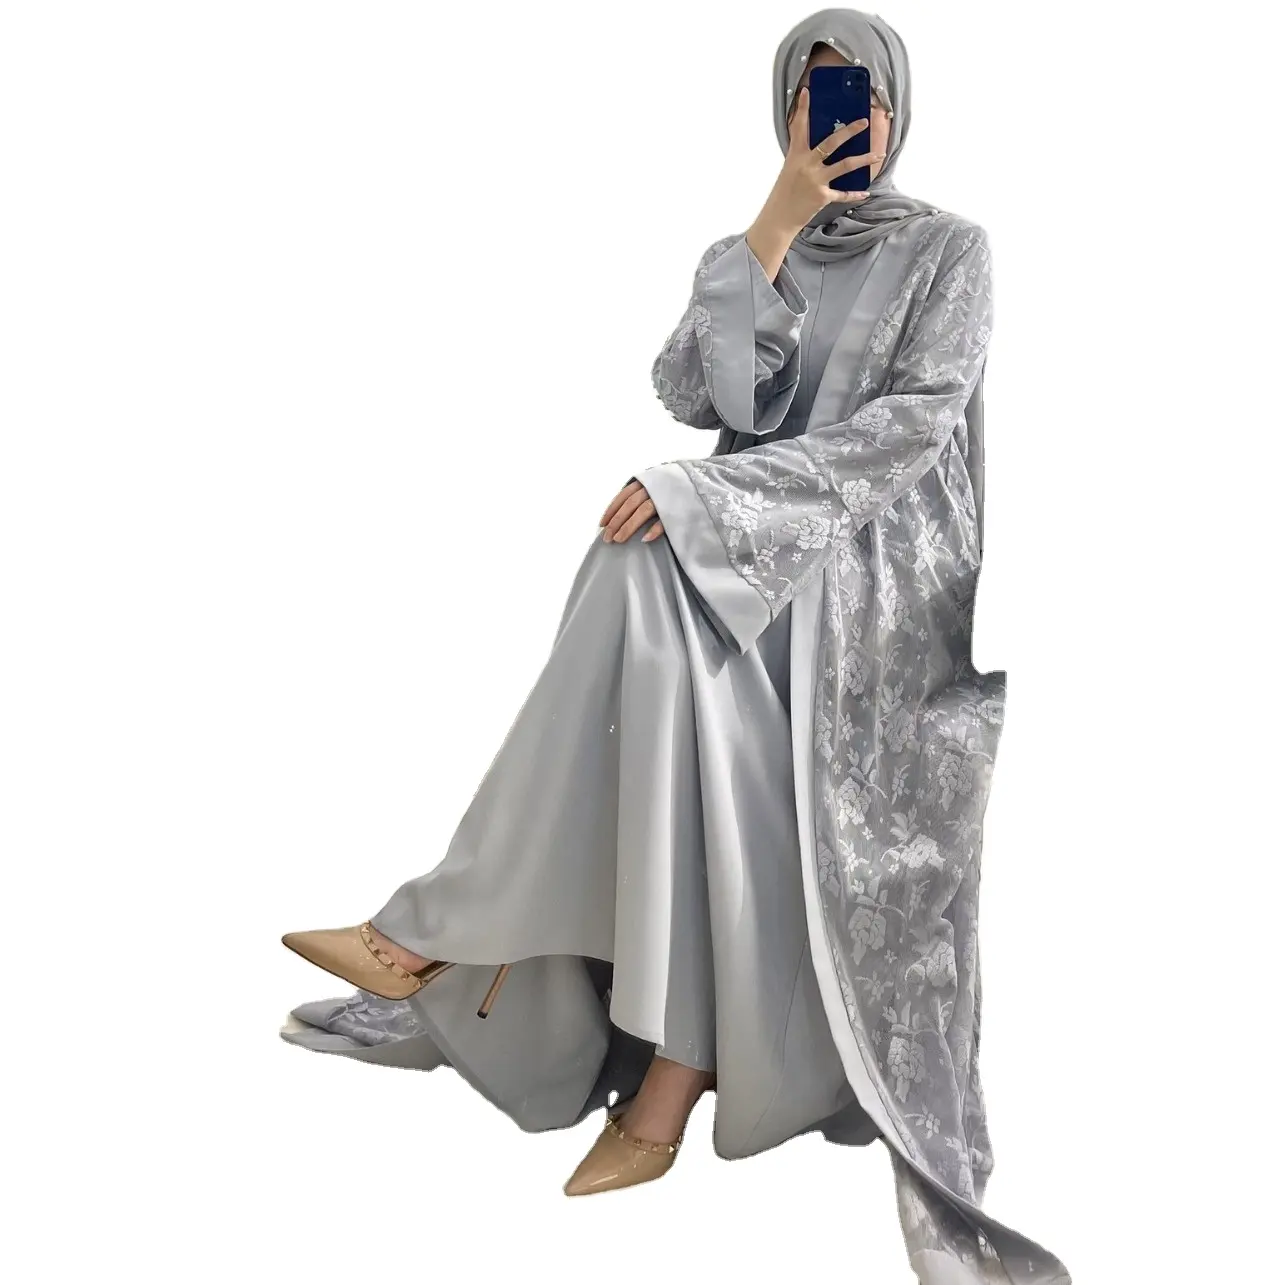 אופנה נשים מוסלמיות אסלאמית שמלה מסורתית בסגנון חדש שמלה ערבית קפטן עבאיה בורקה